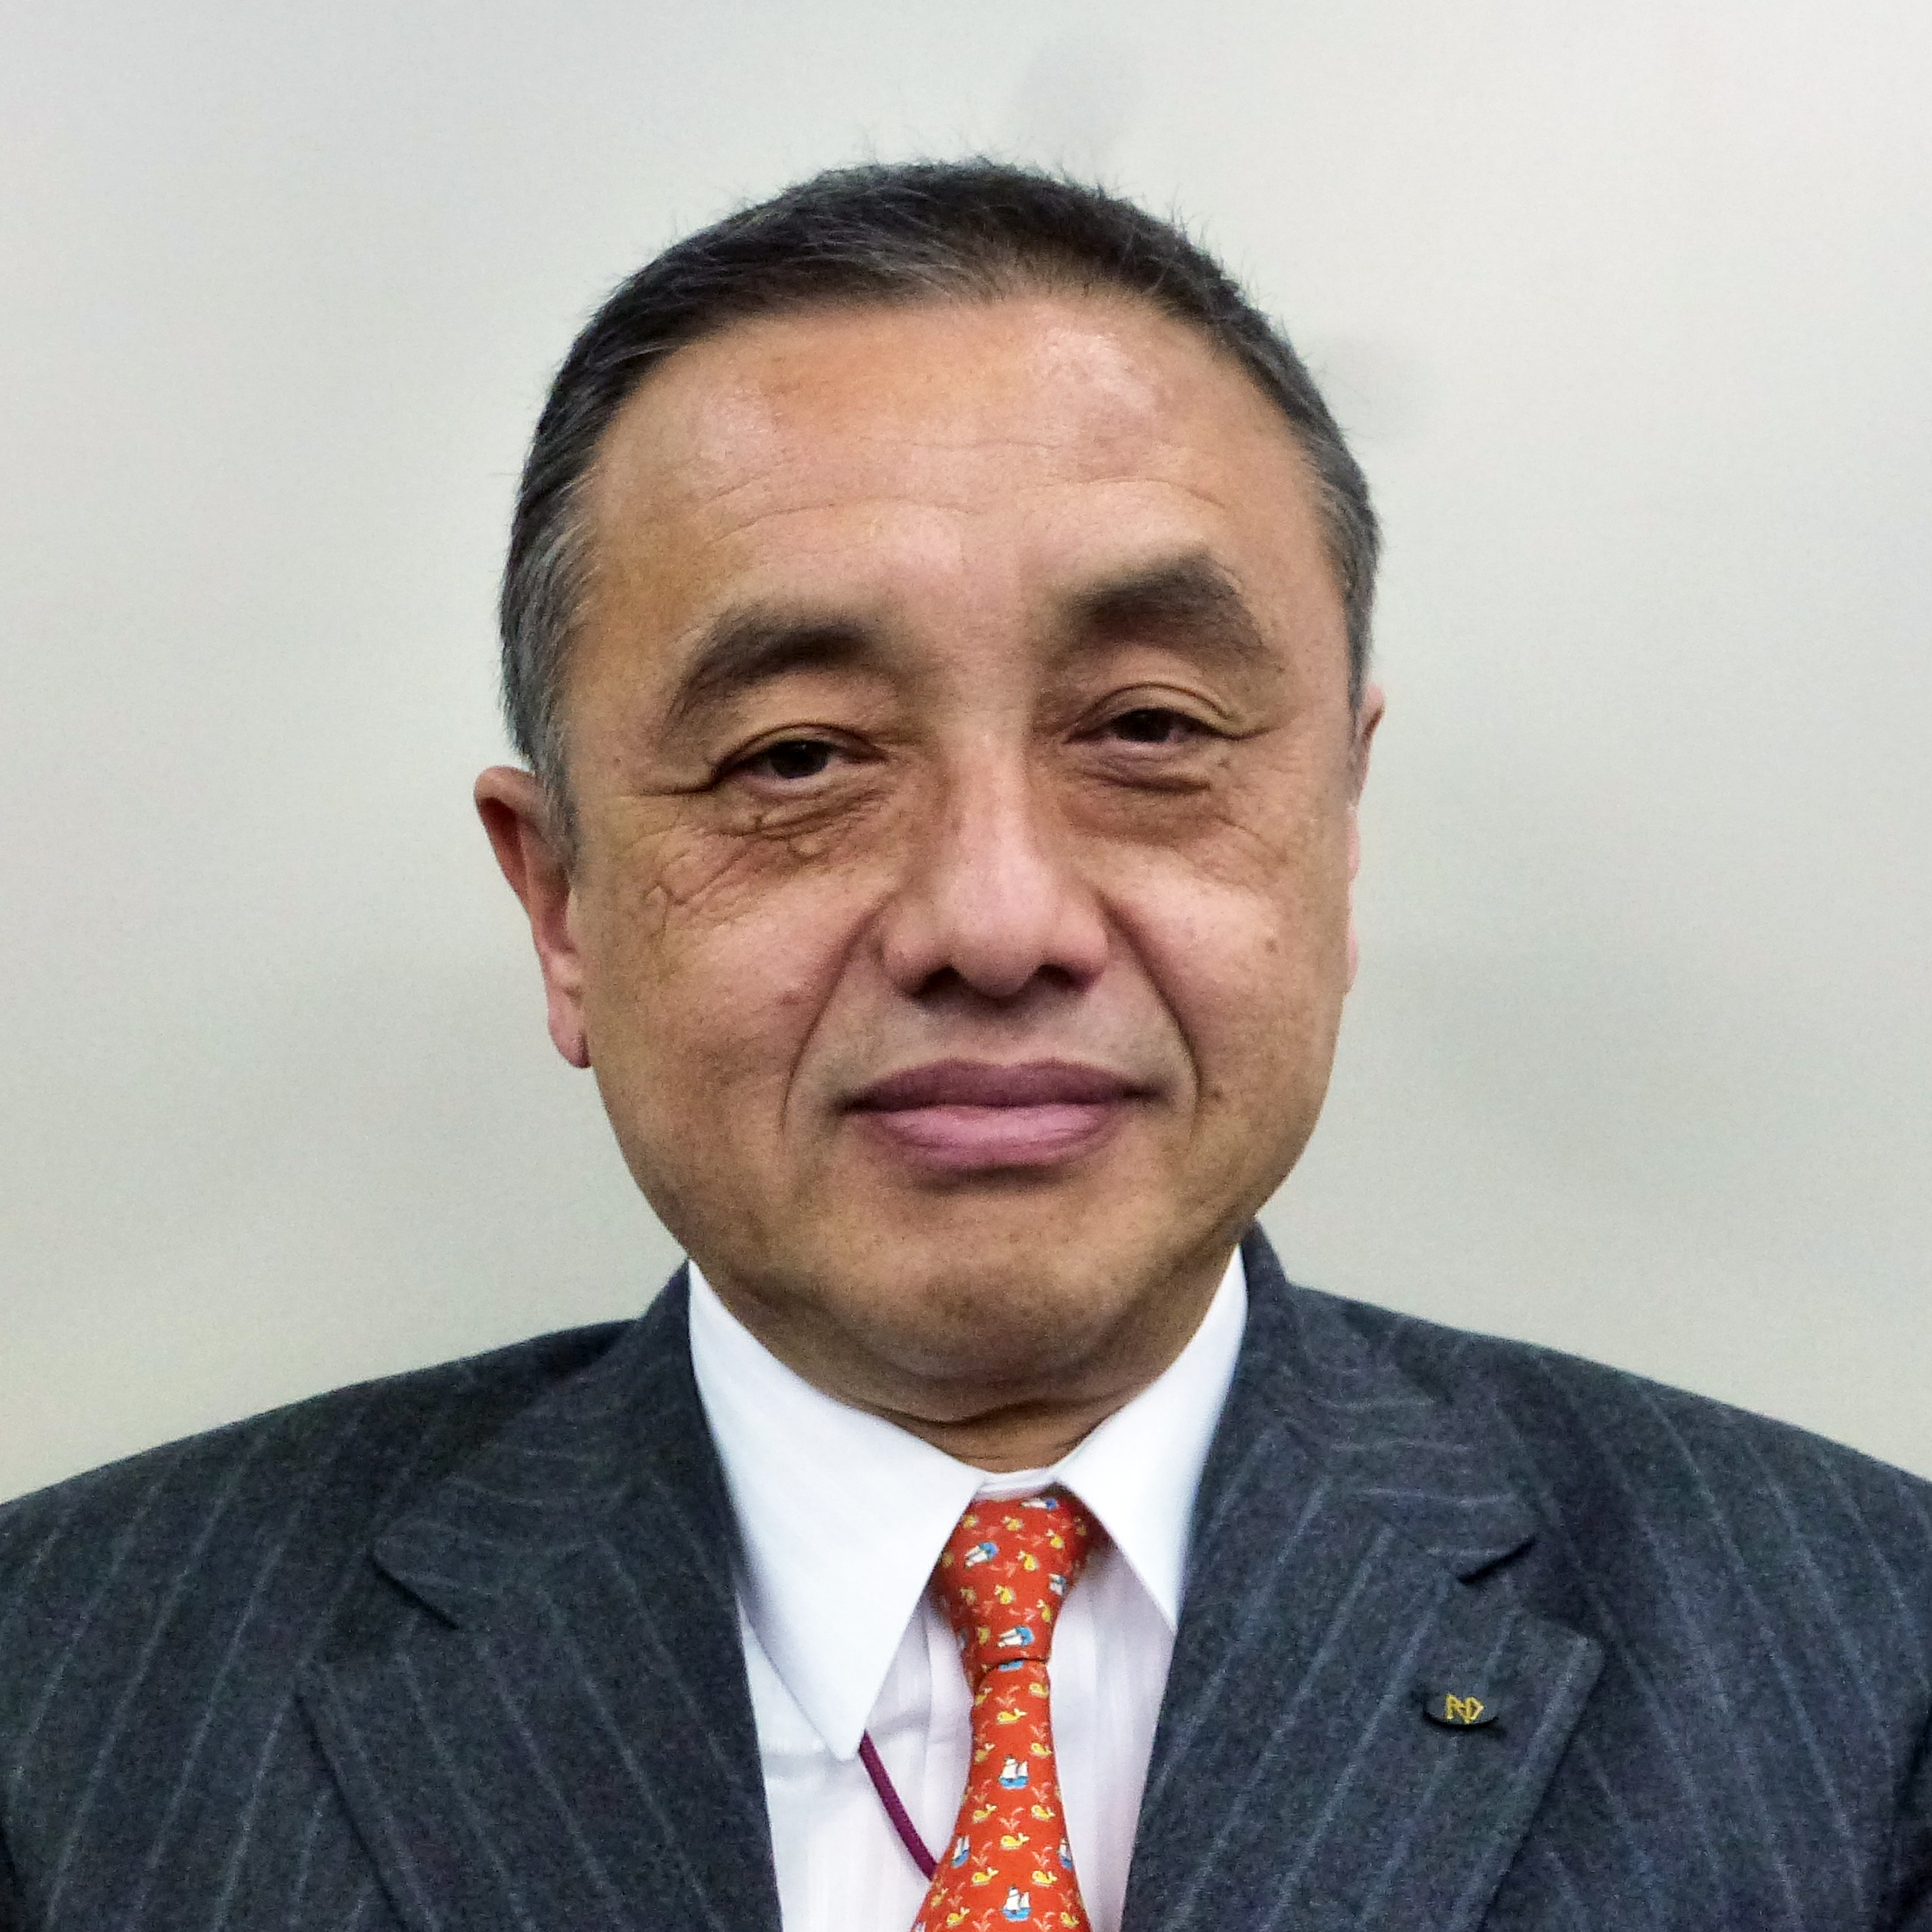 【2021年年頭所感】日本配線資材工業会「ピンチをチャンスに変革」松本年生 会長